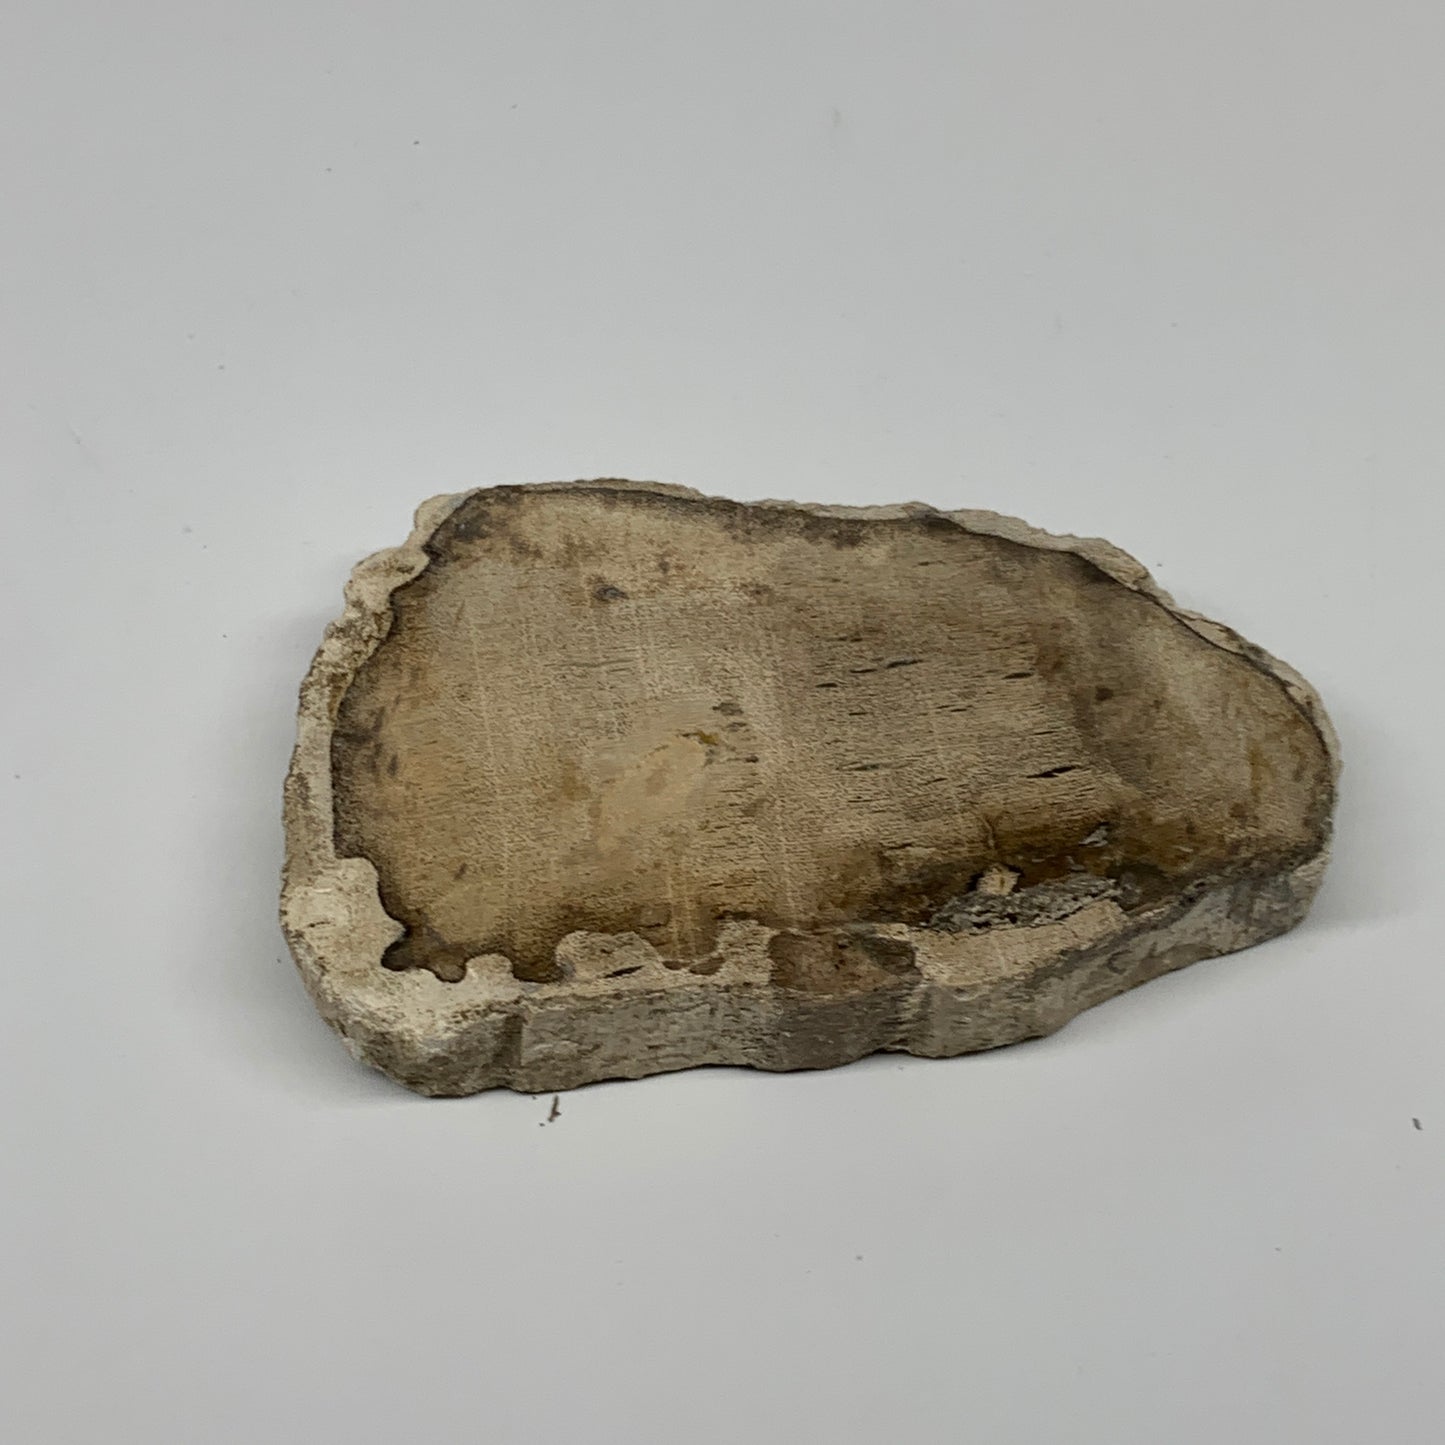 185g,3.9"x2.4"x0.6" Petrified Wood Slab Tree Branch Specimen, Minerals, B22636